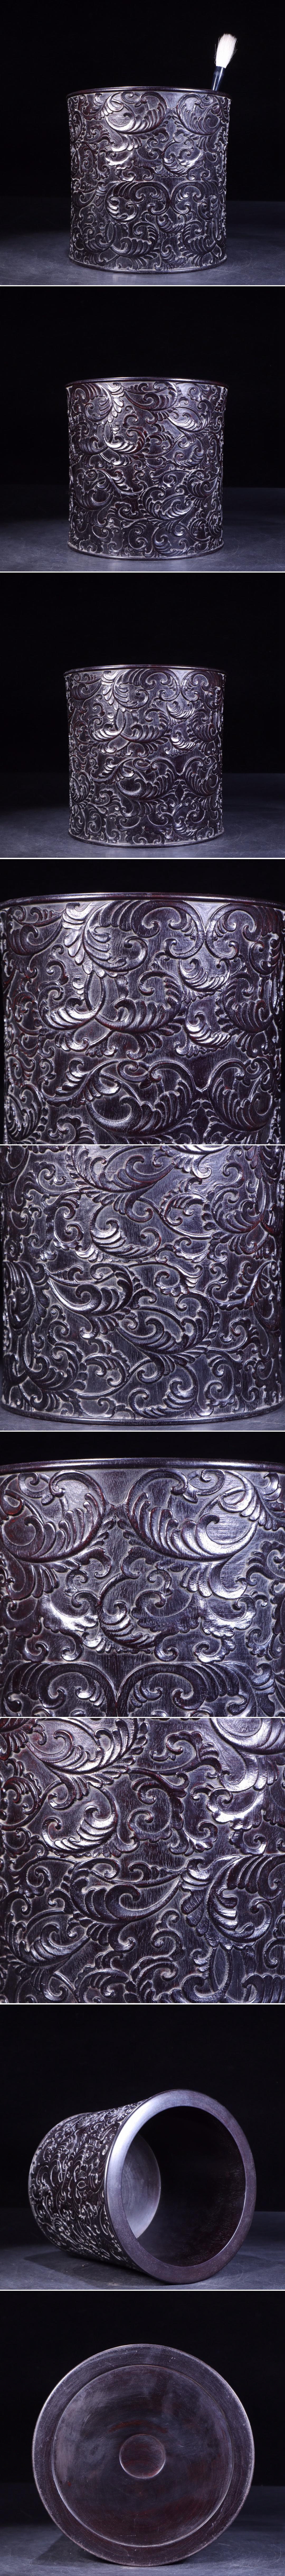 【瓏】紫檀の木彫 龍紋鼻煙壺 清時代 極細工 手彫り 置物擺件 中国古賞物 蔵出